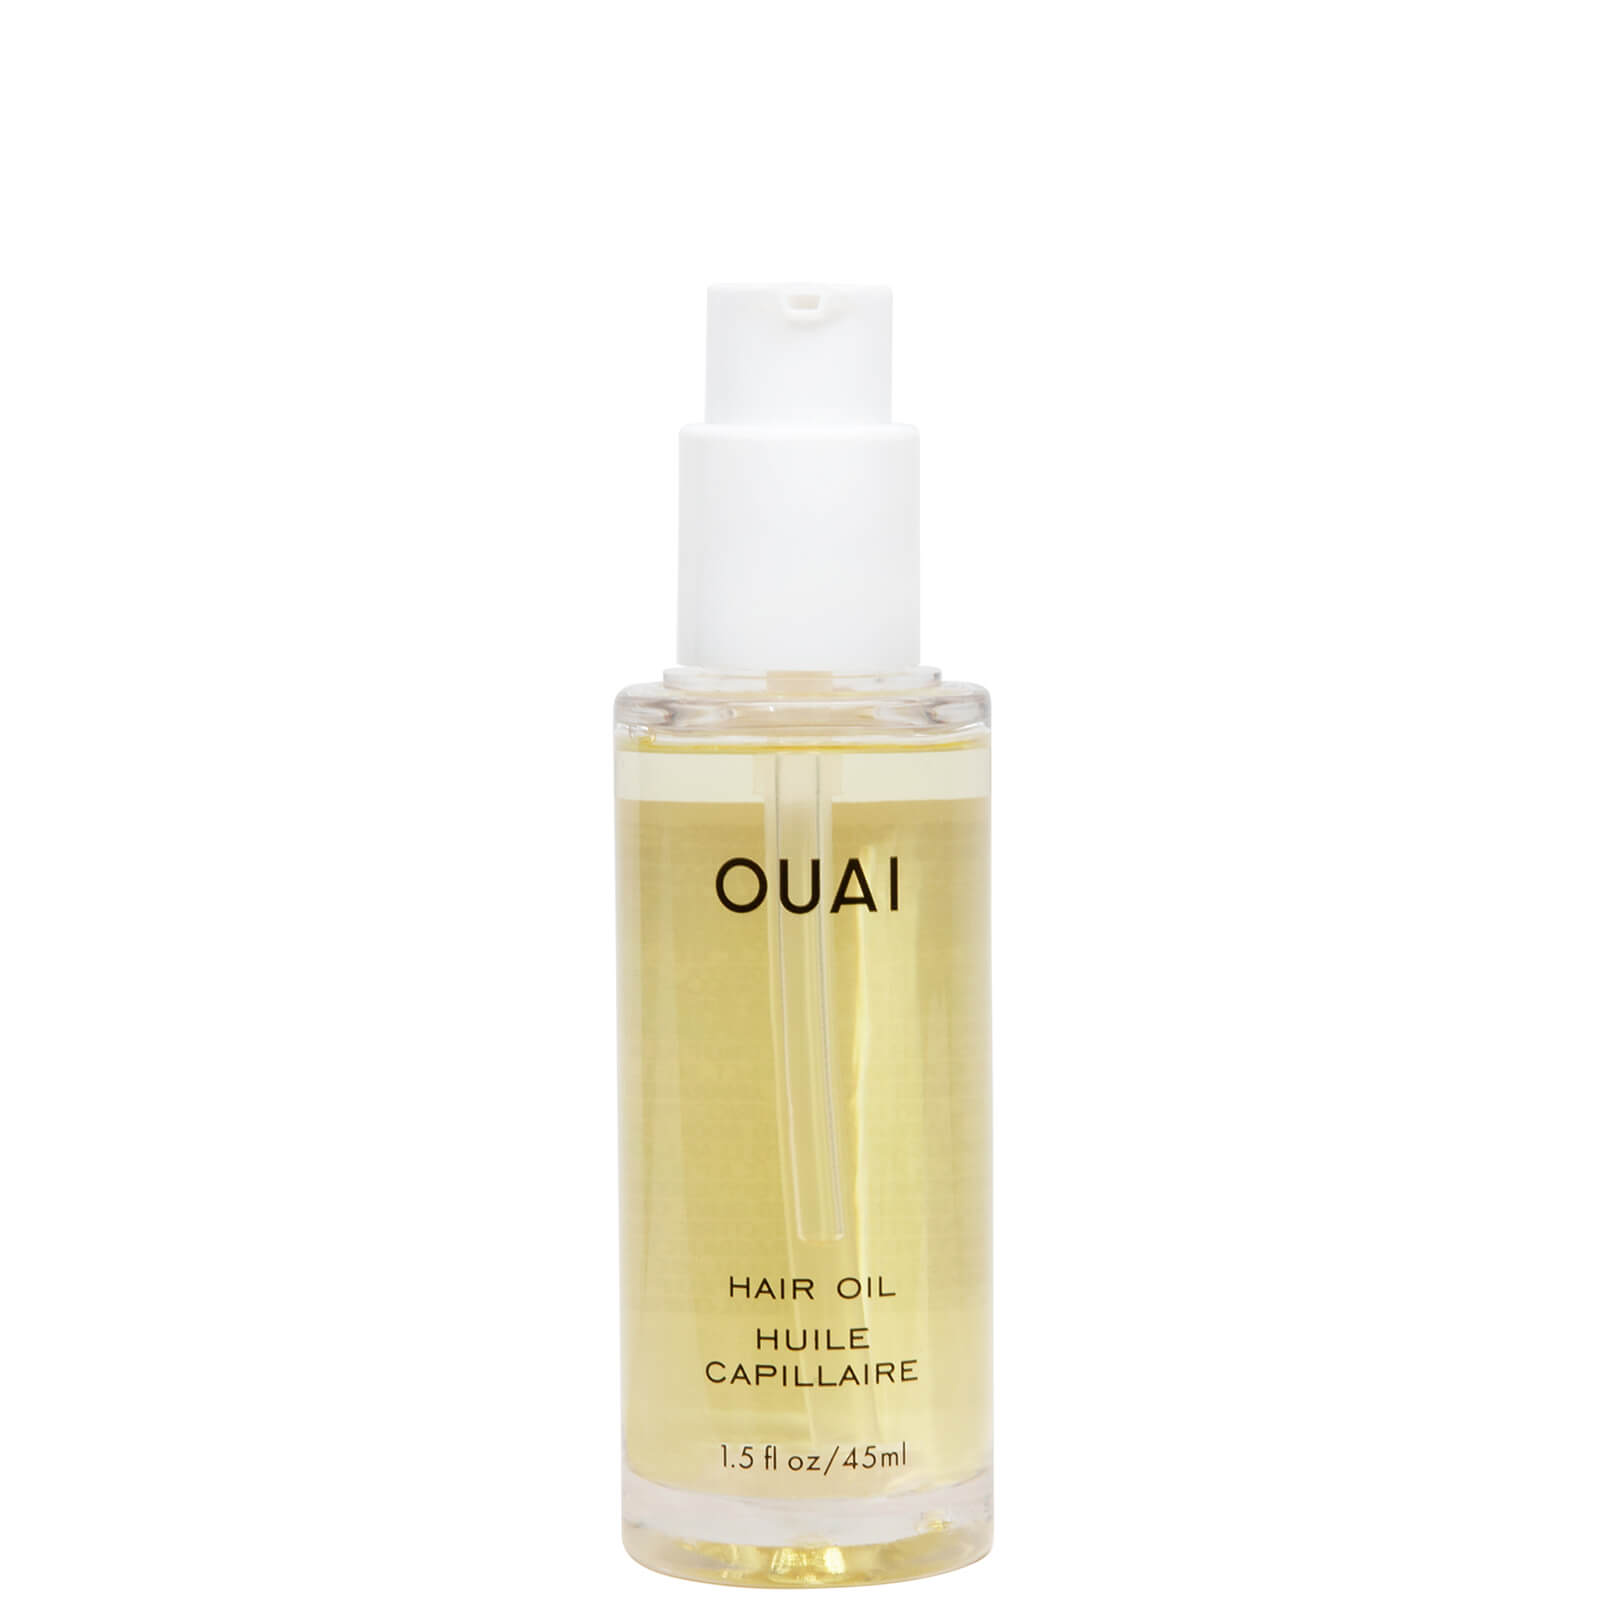 OUAI Hair Oil 45ml product